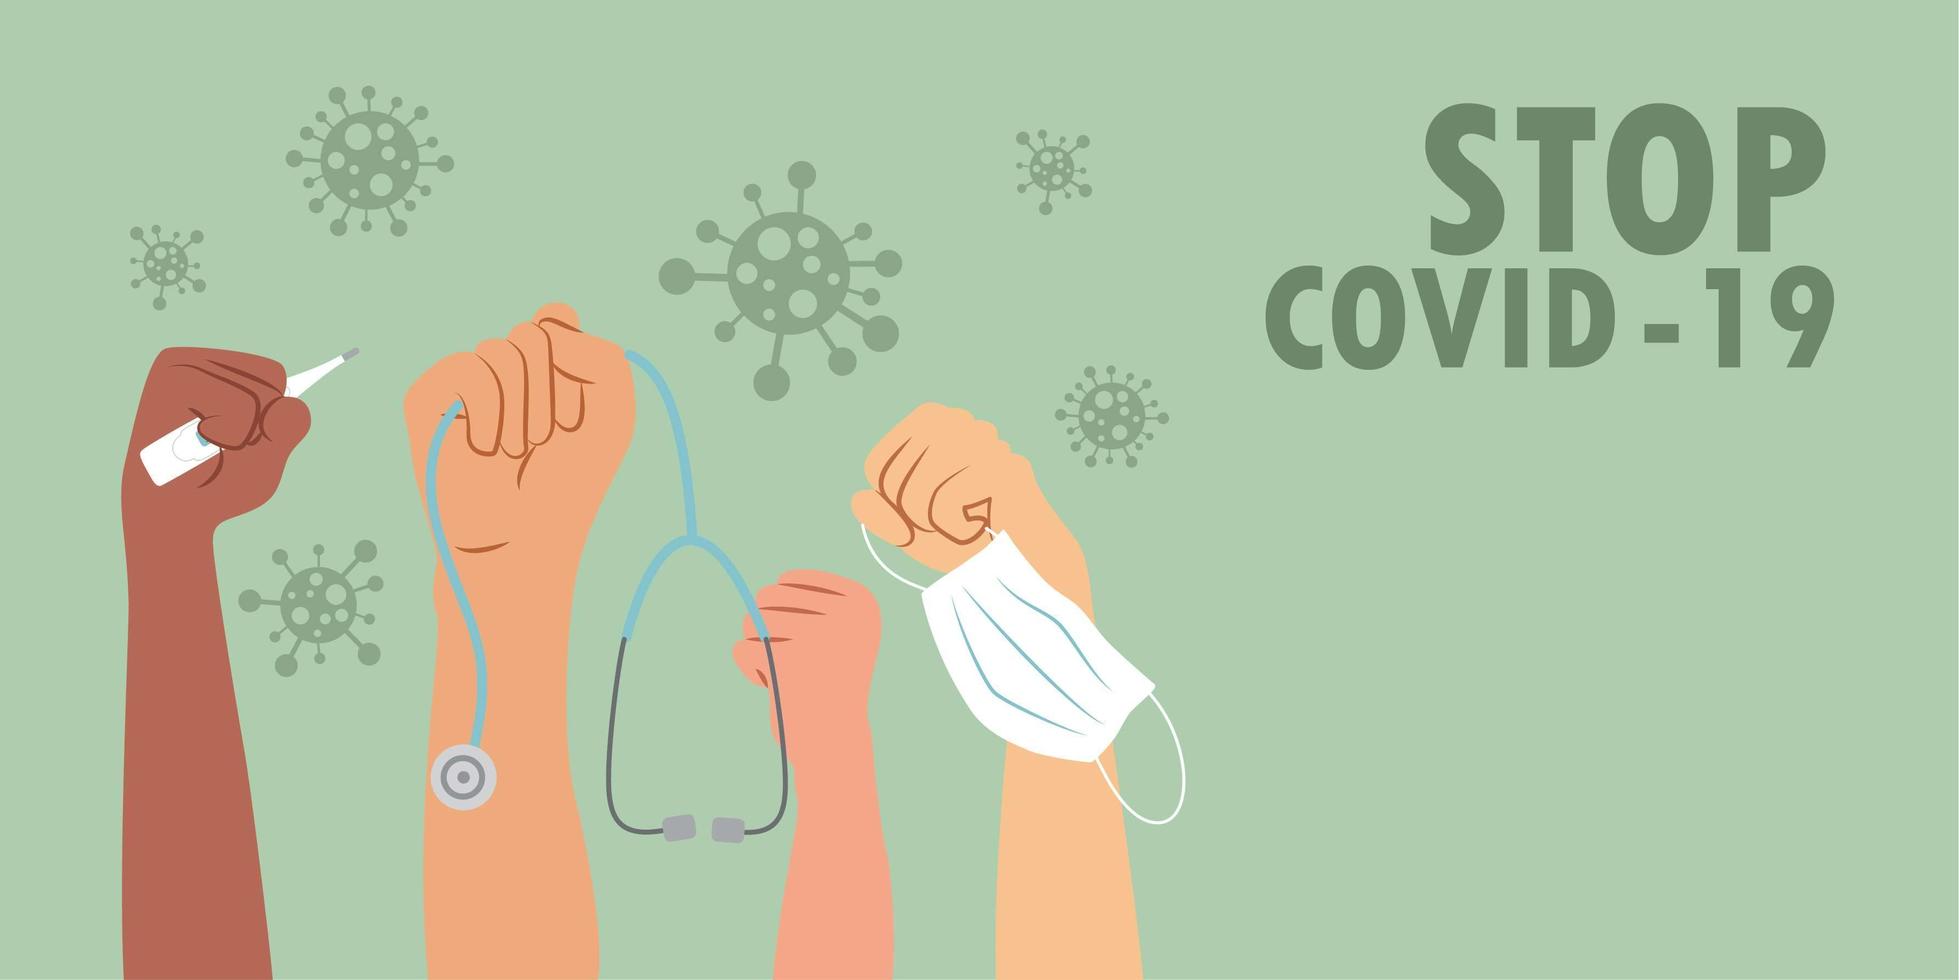 arrêter le concept de propagation du coronavirus avec les mains en l'air vecteur